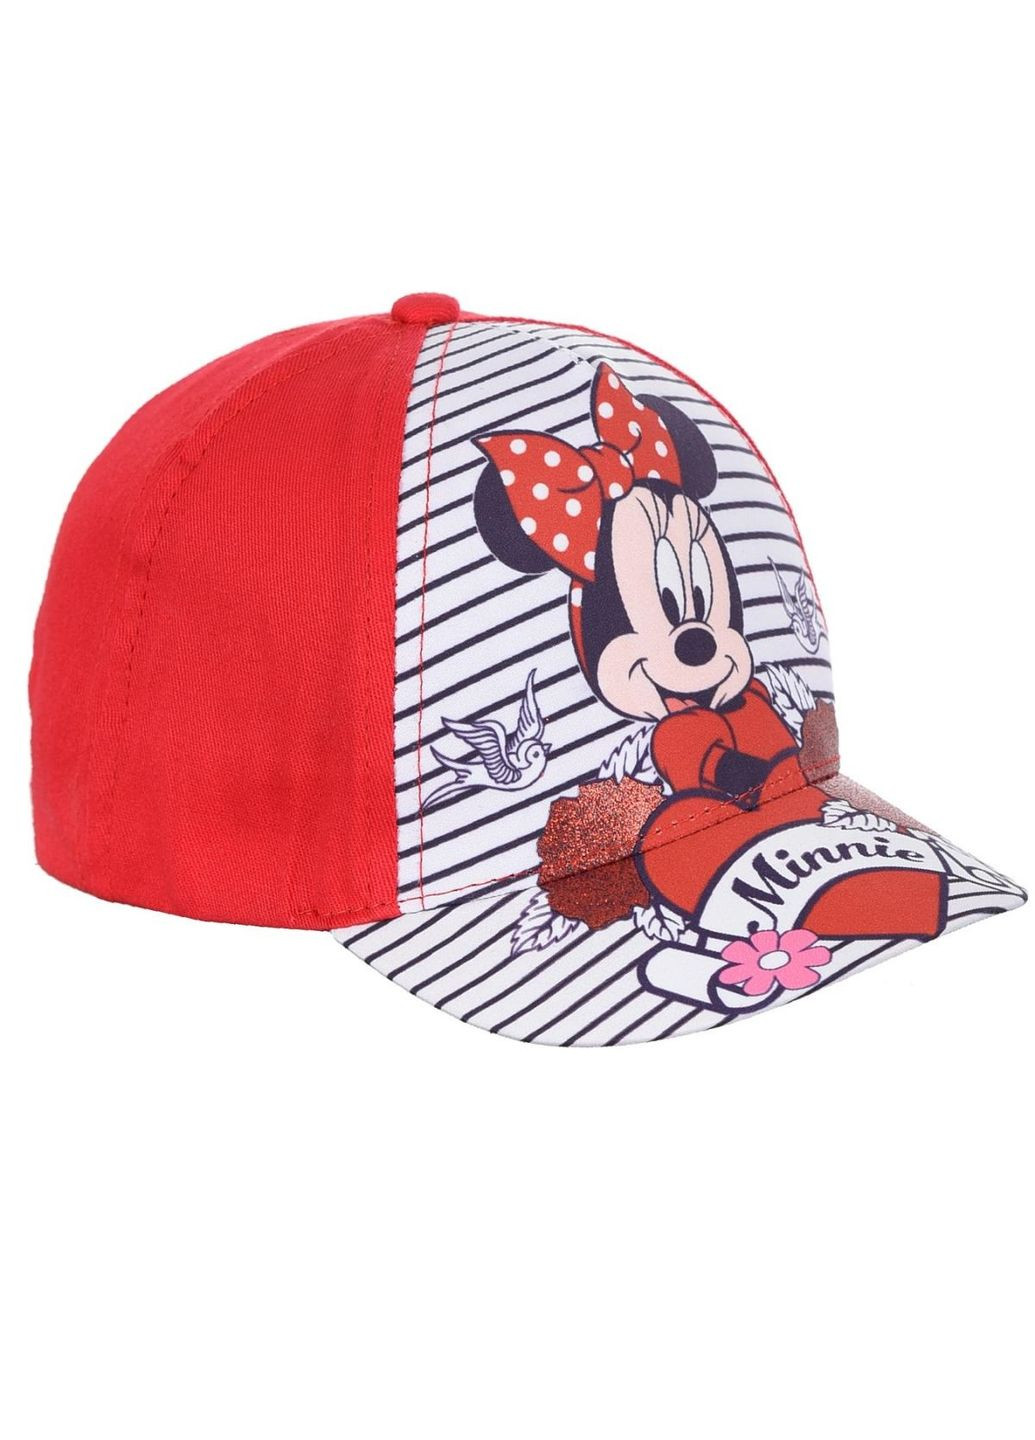 Кепка Minnie Mouse (Минни Маус) UE40961 EU Disney кепка (290252712)